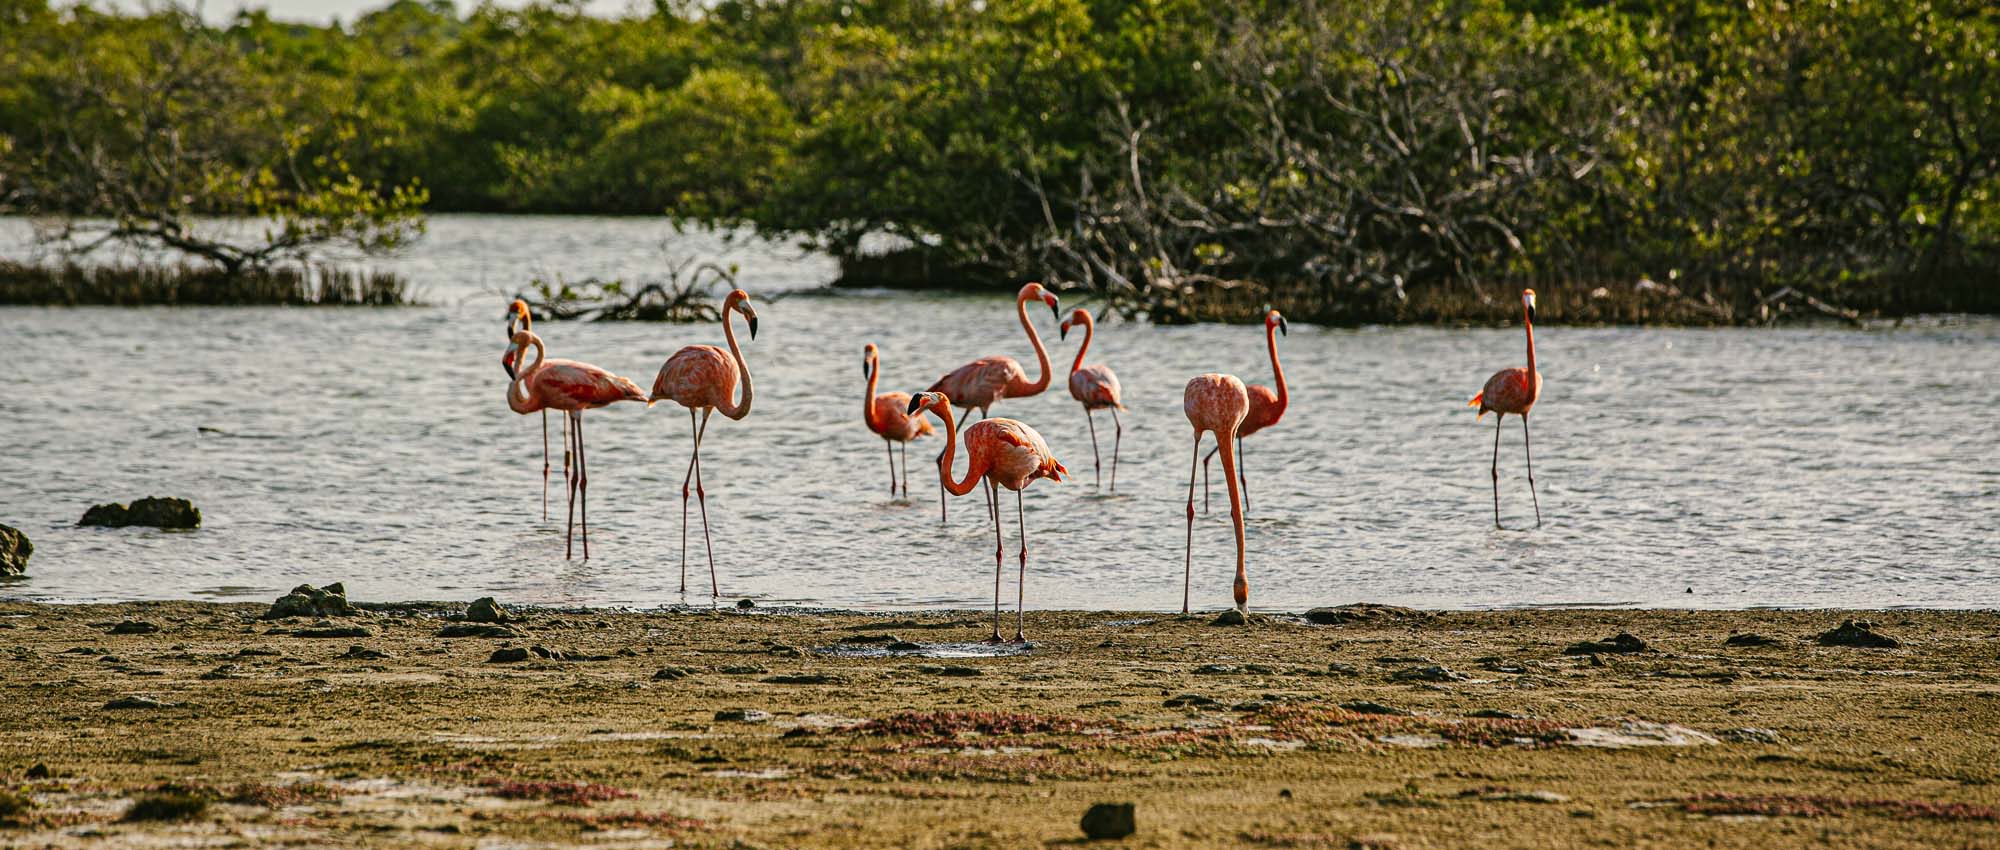 Groep flamingo's die zich in water bevinden